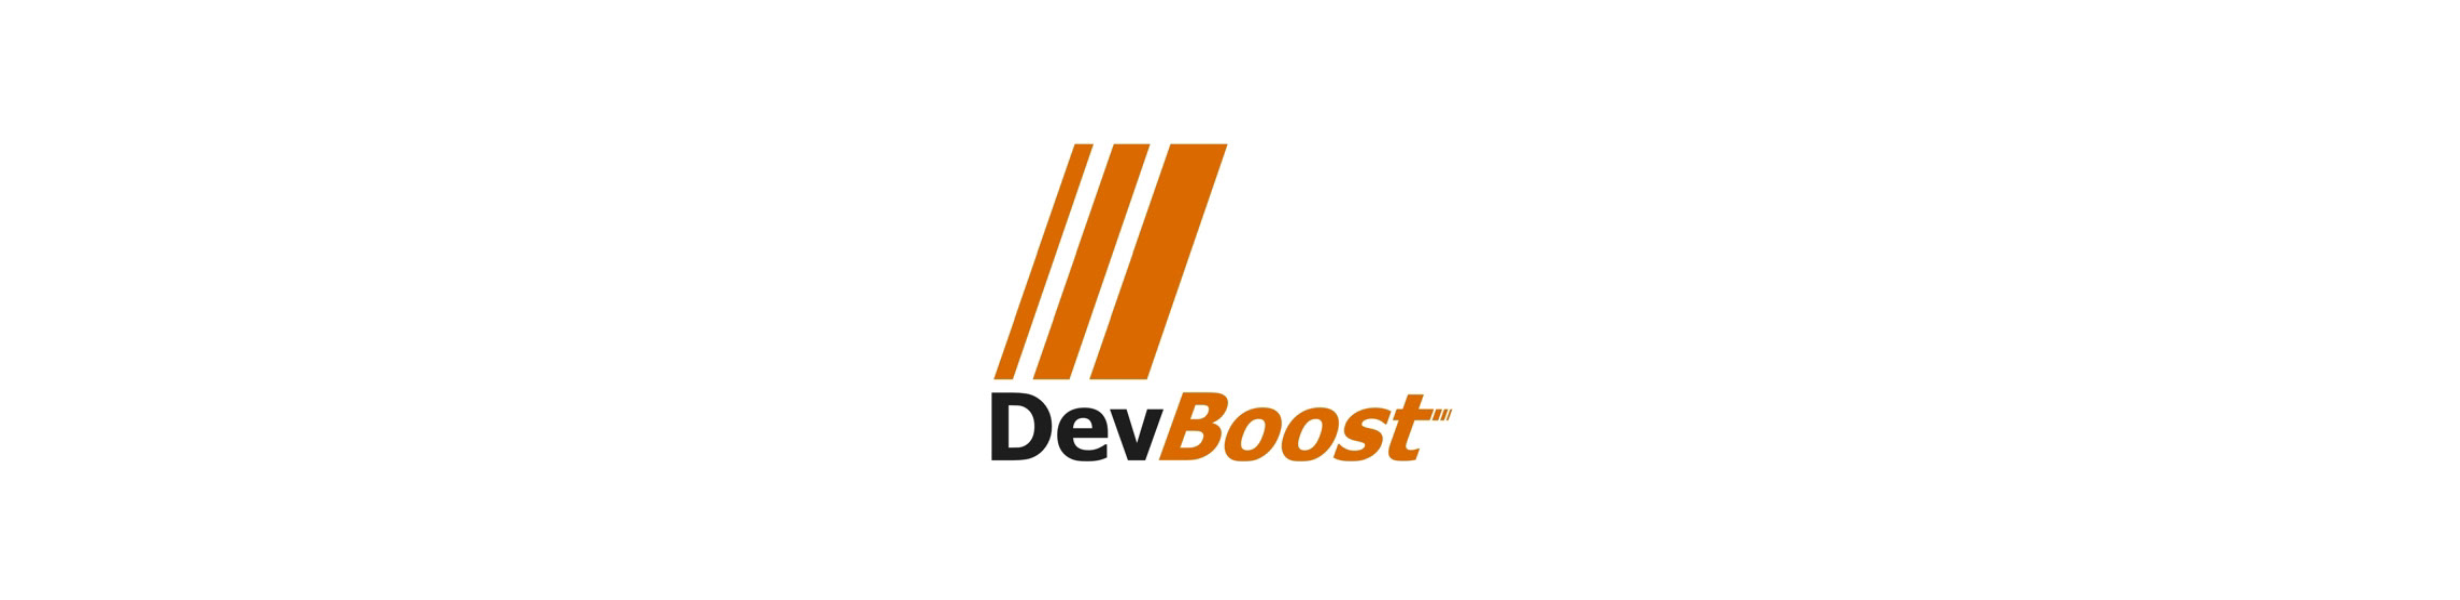 DevBoost Logo Generation 1